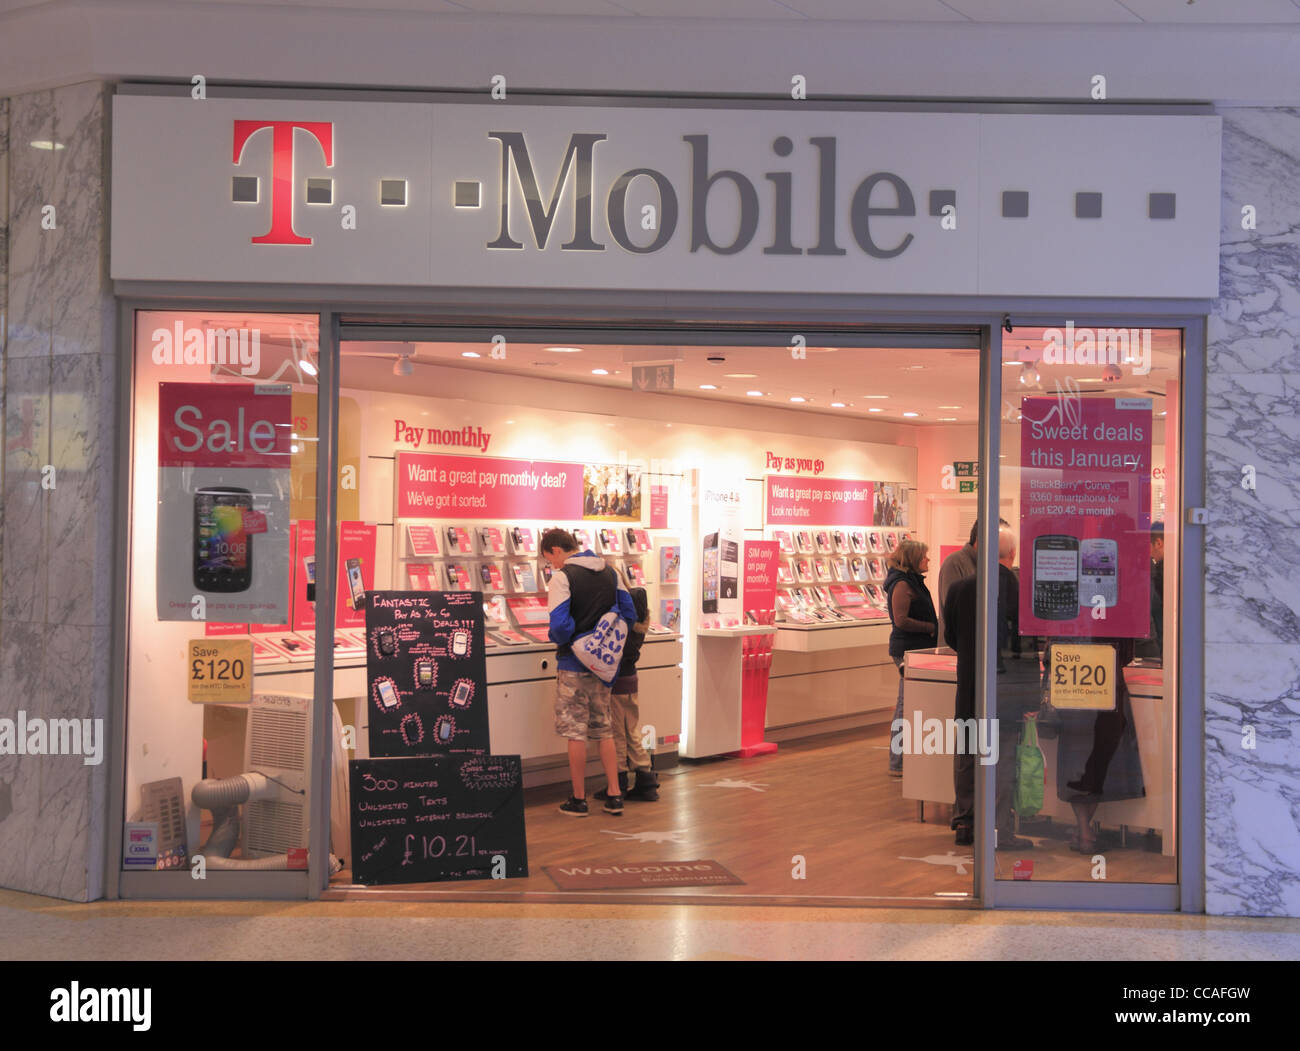 Mobile shop Banque de photographies et d'images à haute résolution - Alamy